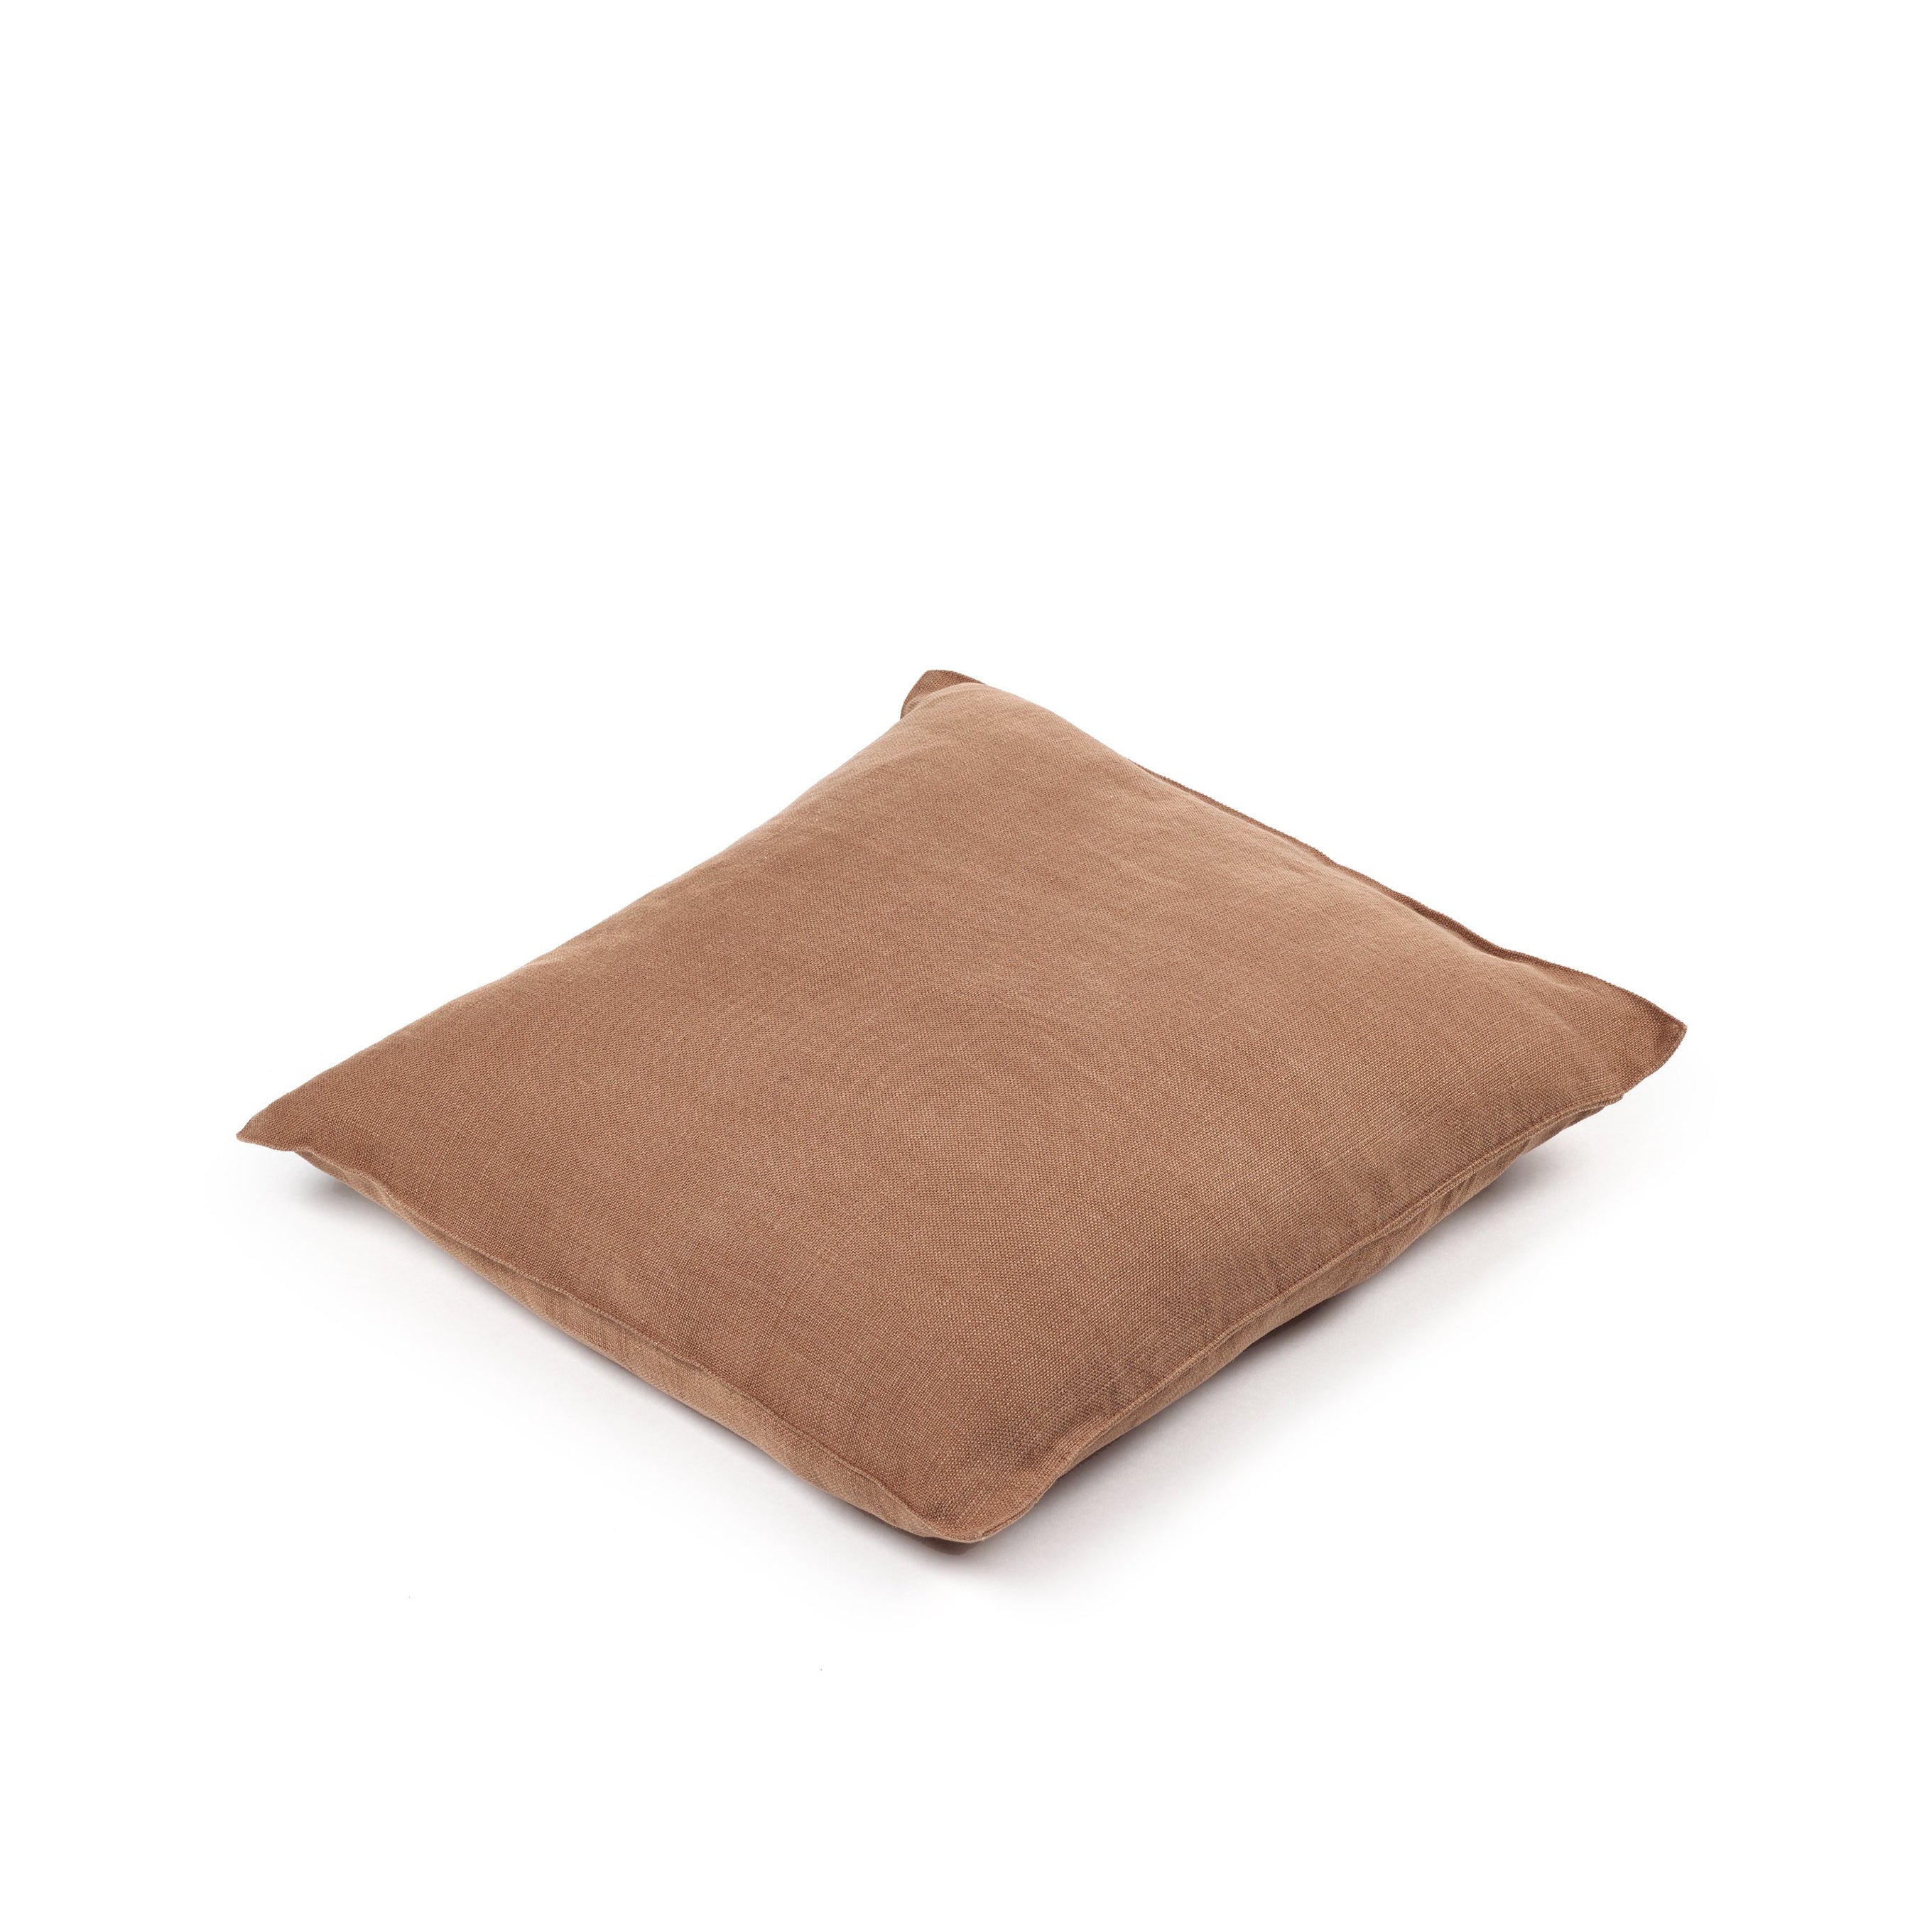 Napoli Pillow Cover, Cinnamon